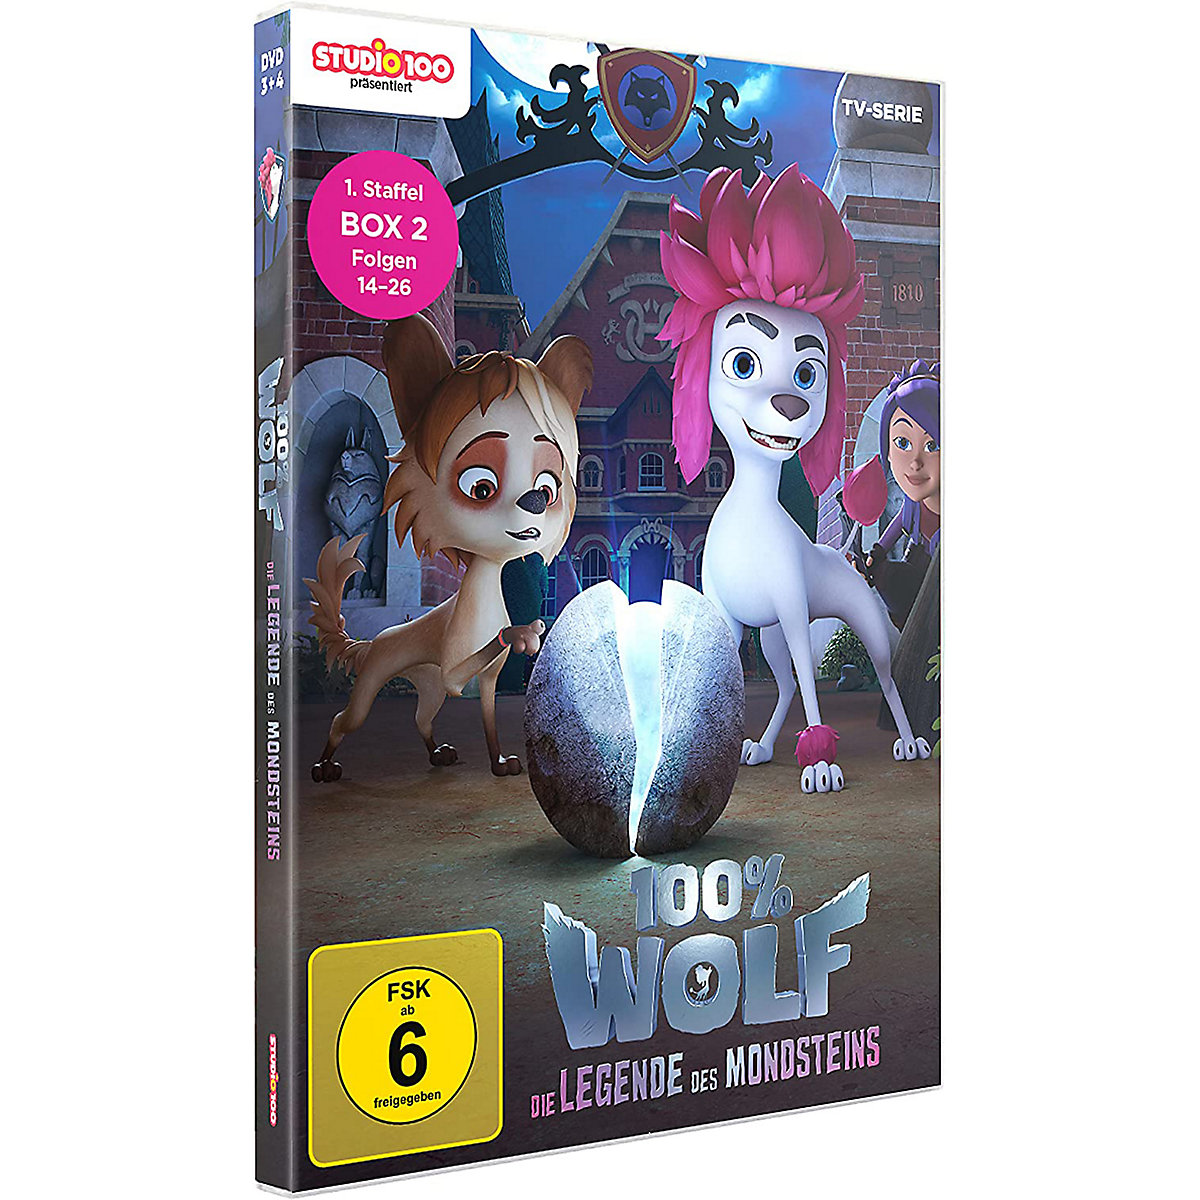 Sony DVD 100% Wolf-Die Legende Des Mondsteins-Staffel 1.2